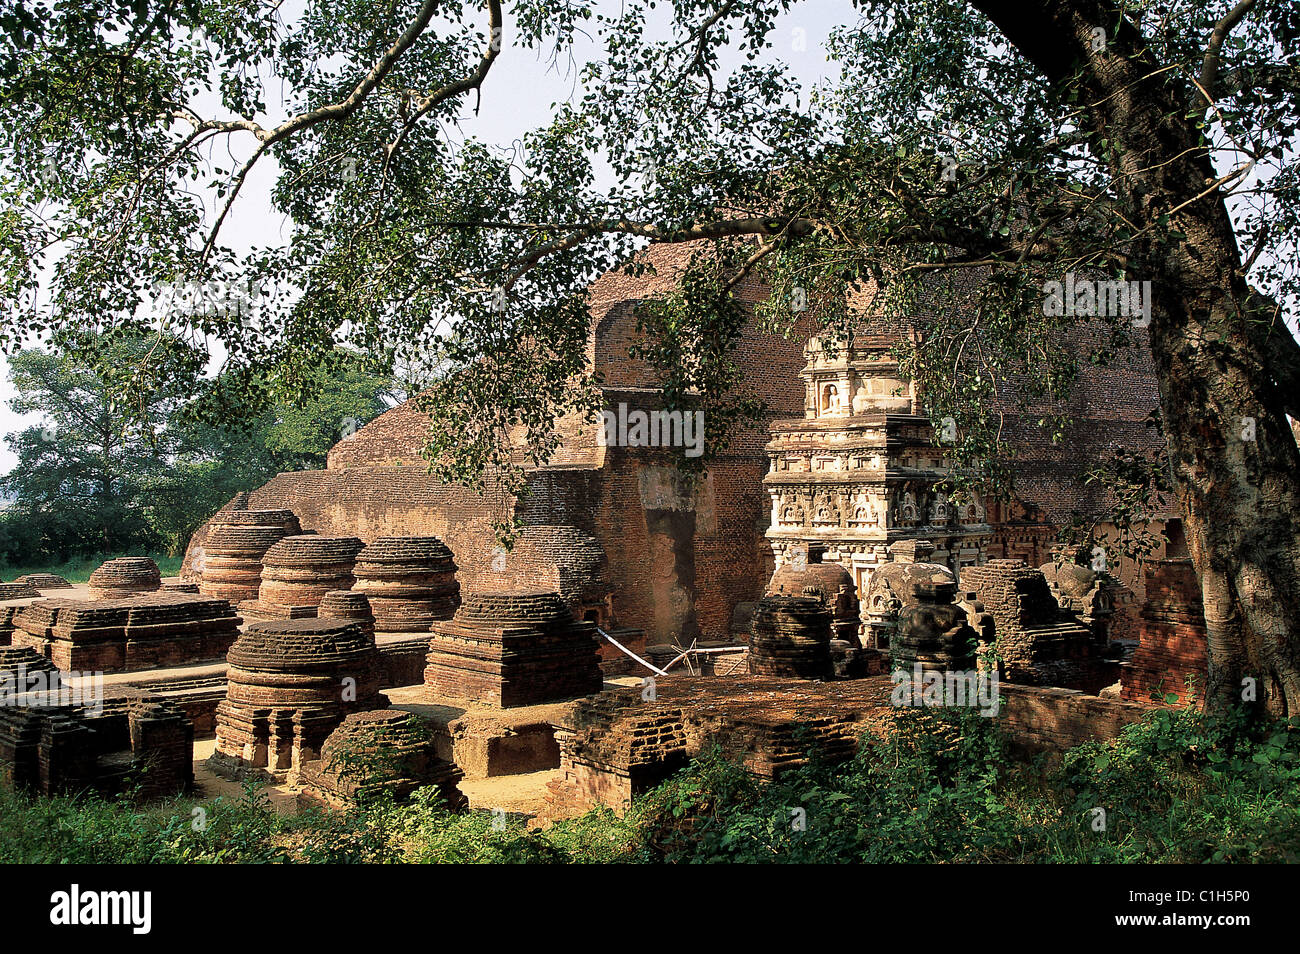 India,State of Bihar, Nalanda, ruins of the greatest Buddhic university in India Stock Photo